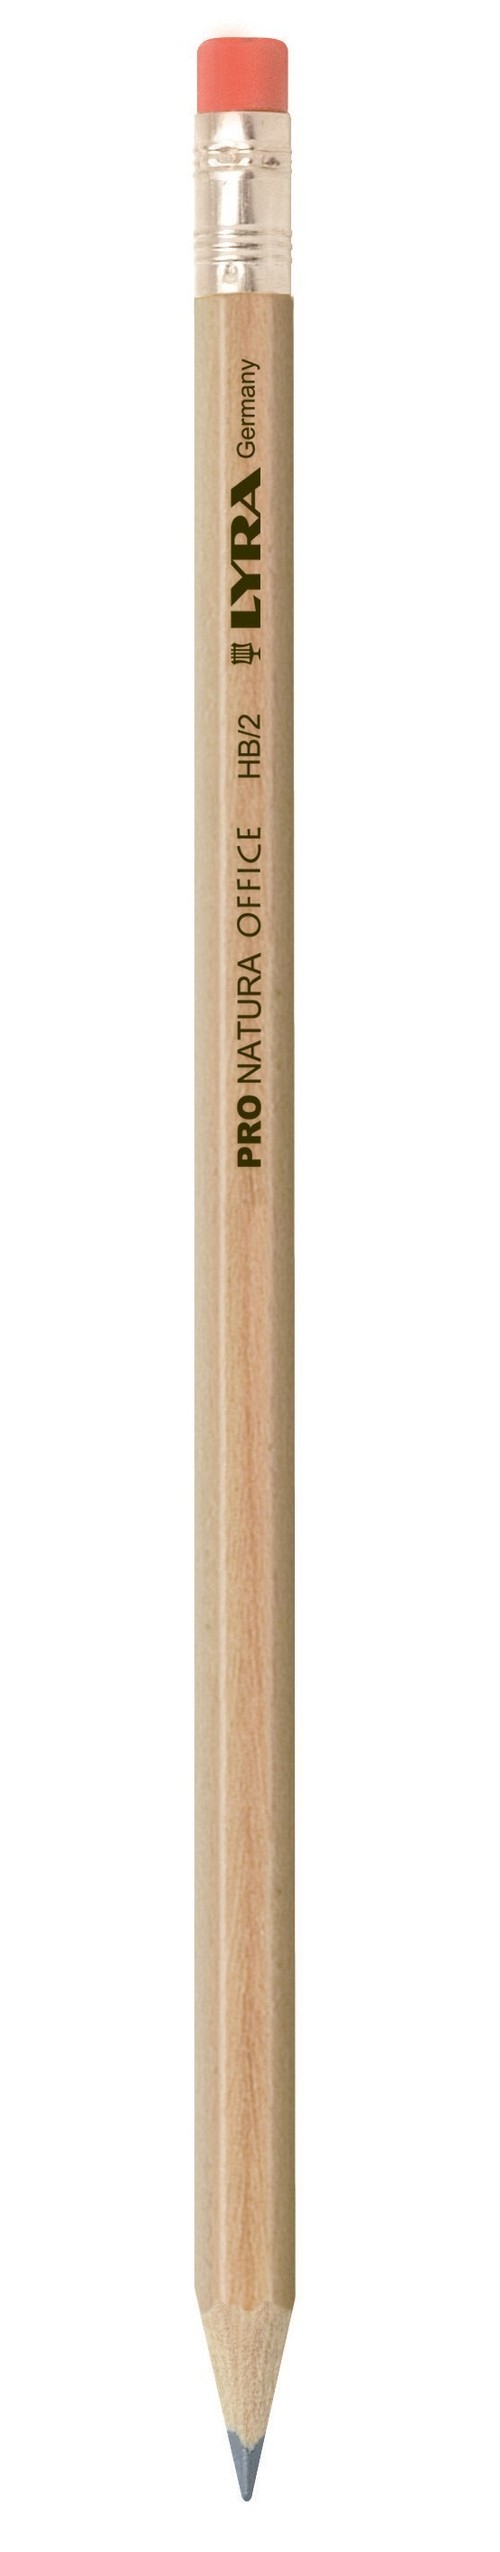 Ołówek Lyra Pro Natura HB z gumką (L1350100 FIL)